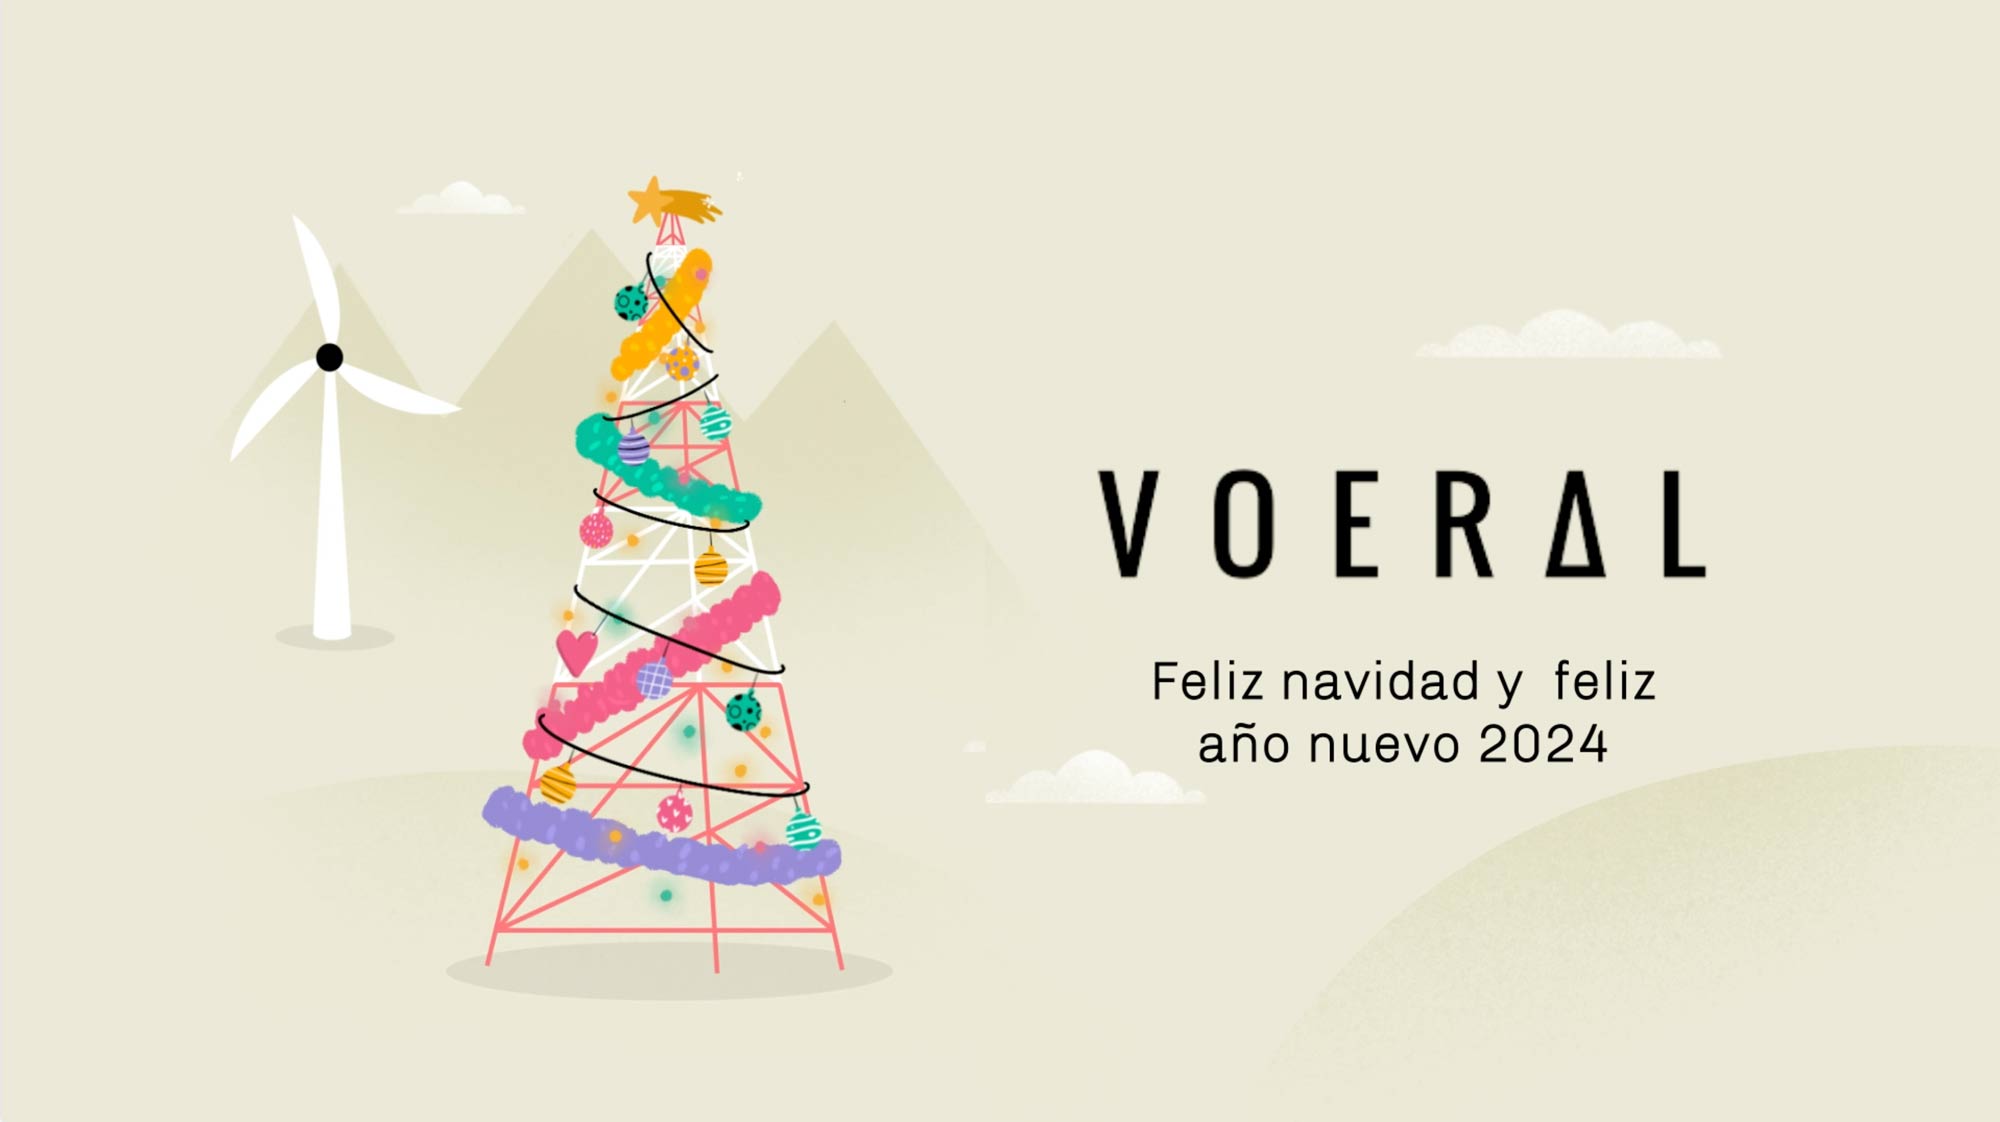 Felicitacion navideña VOERAL 2023 Huracan Estudio de animación y diseño en Valencia, Madrid, Barcelona y Zaragoza